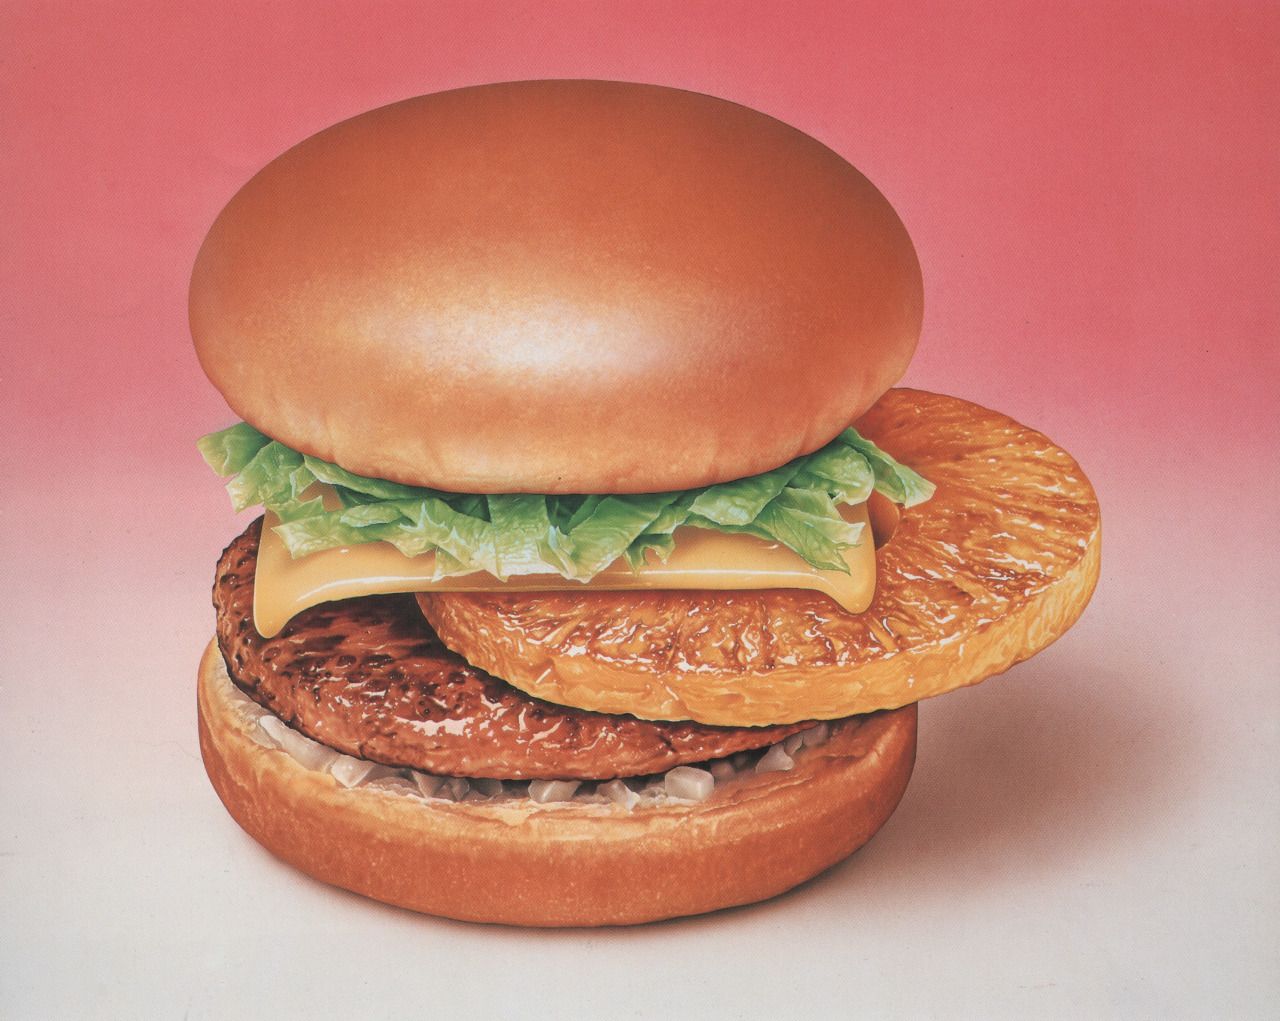 Burger Vaporwave Retrowave Fast Food 1280x1021